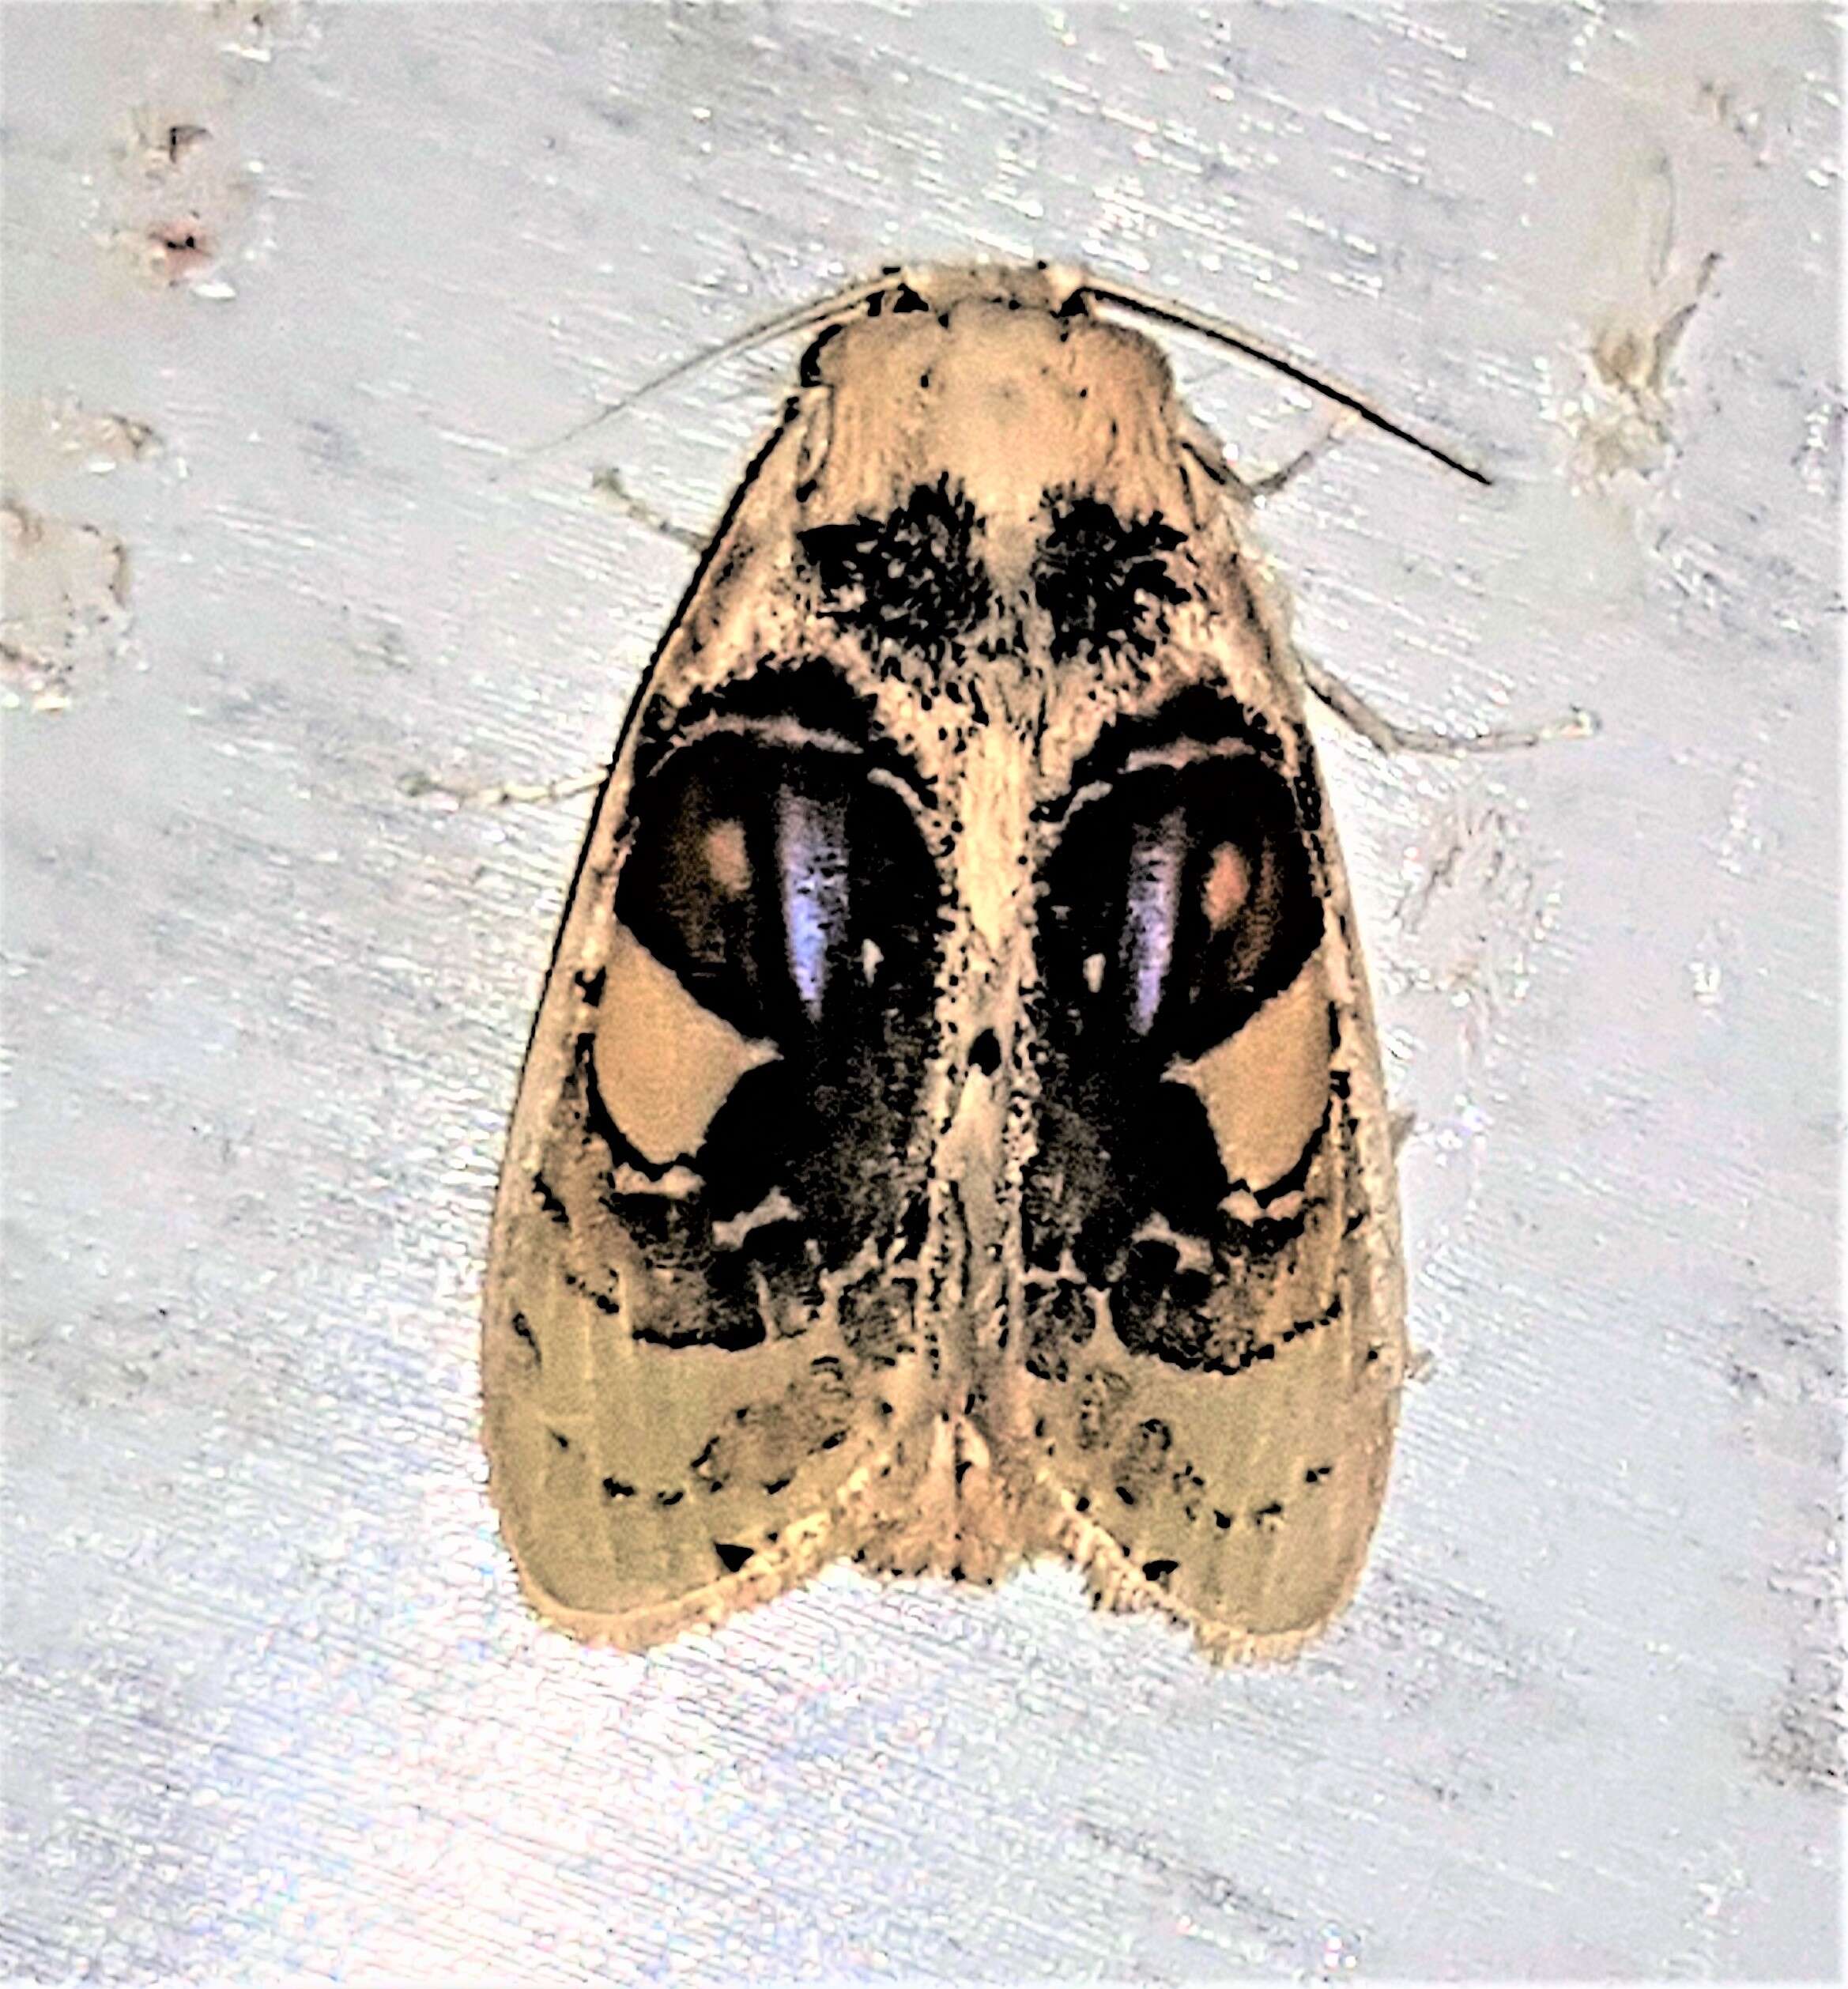 Image of Arrhenophanidae